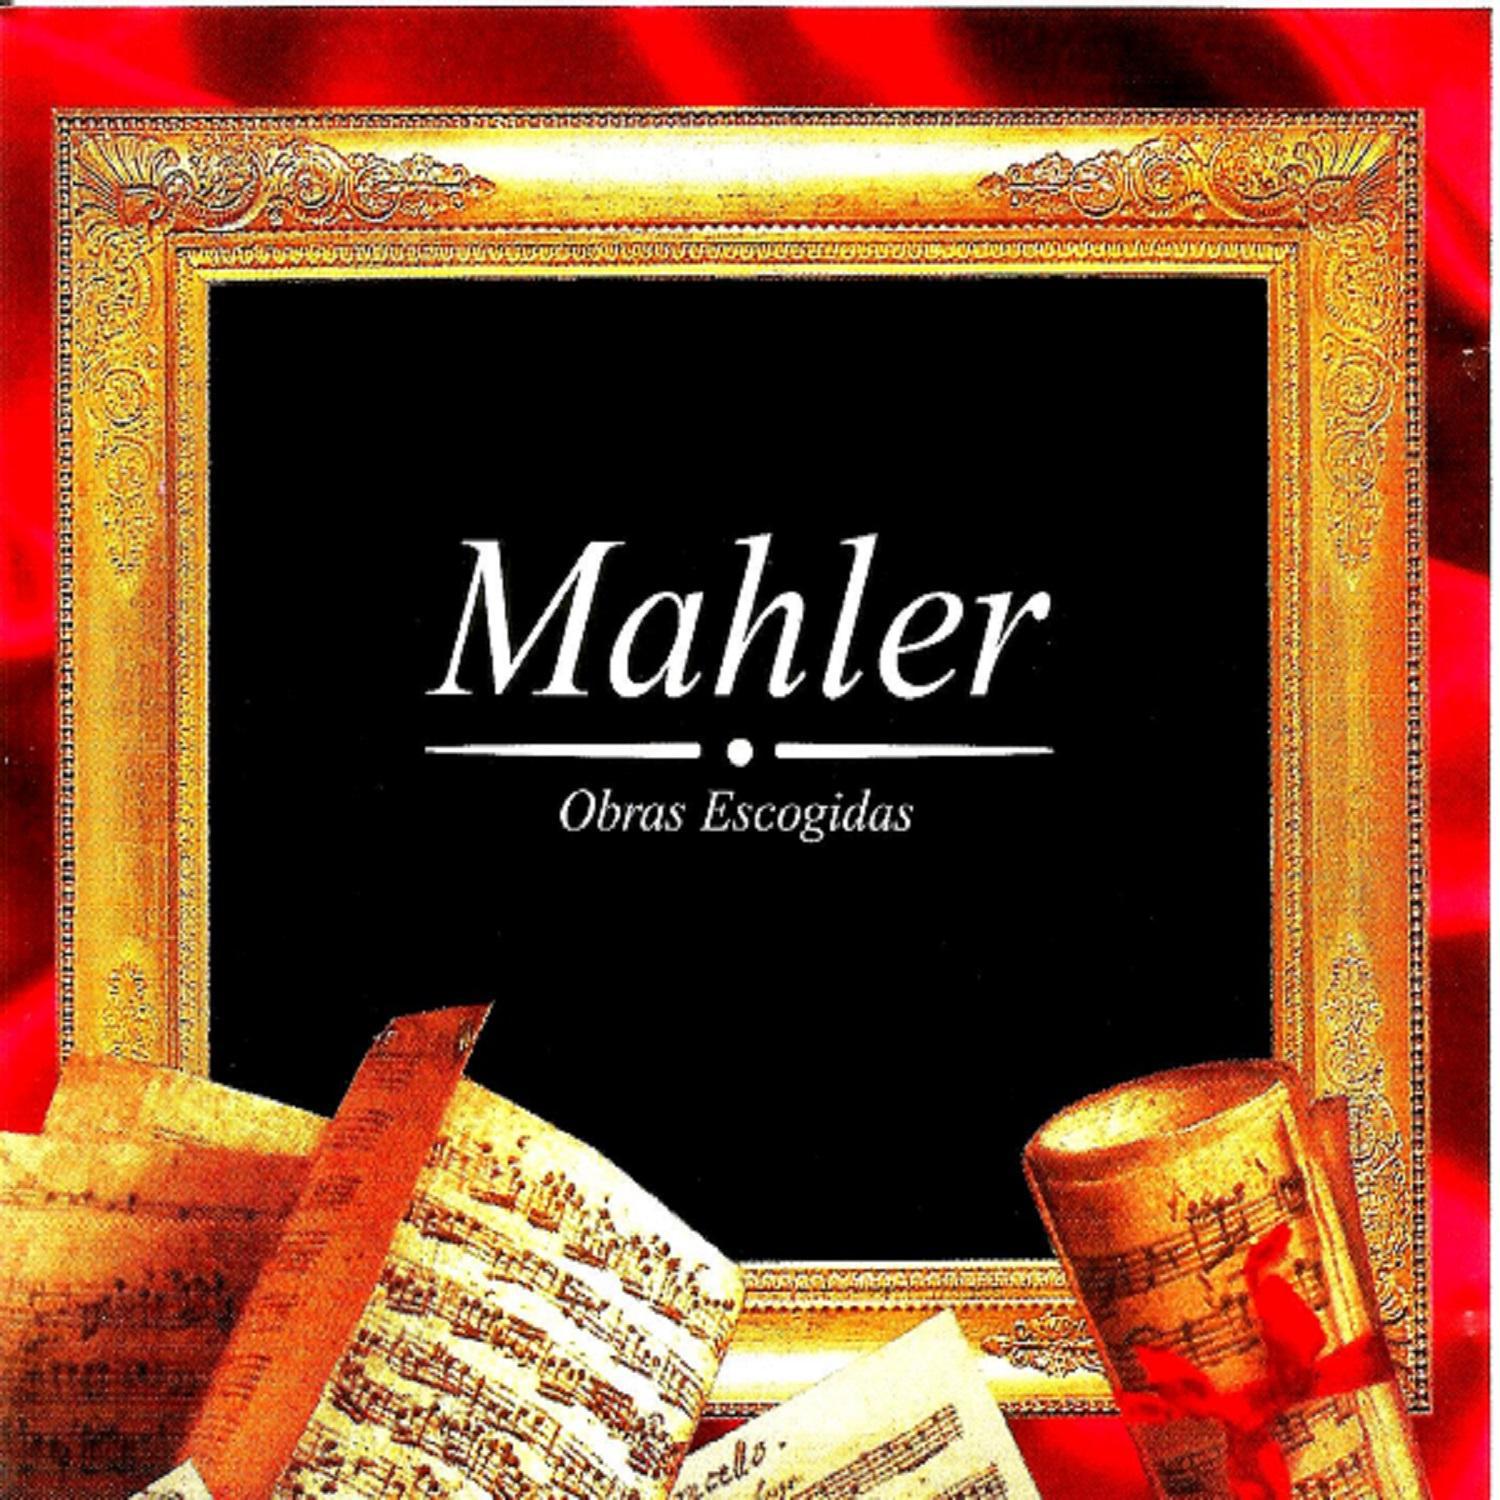 Mahler, Obras Escogidas